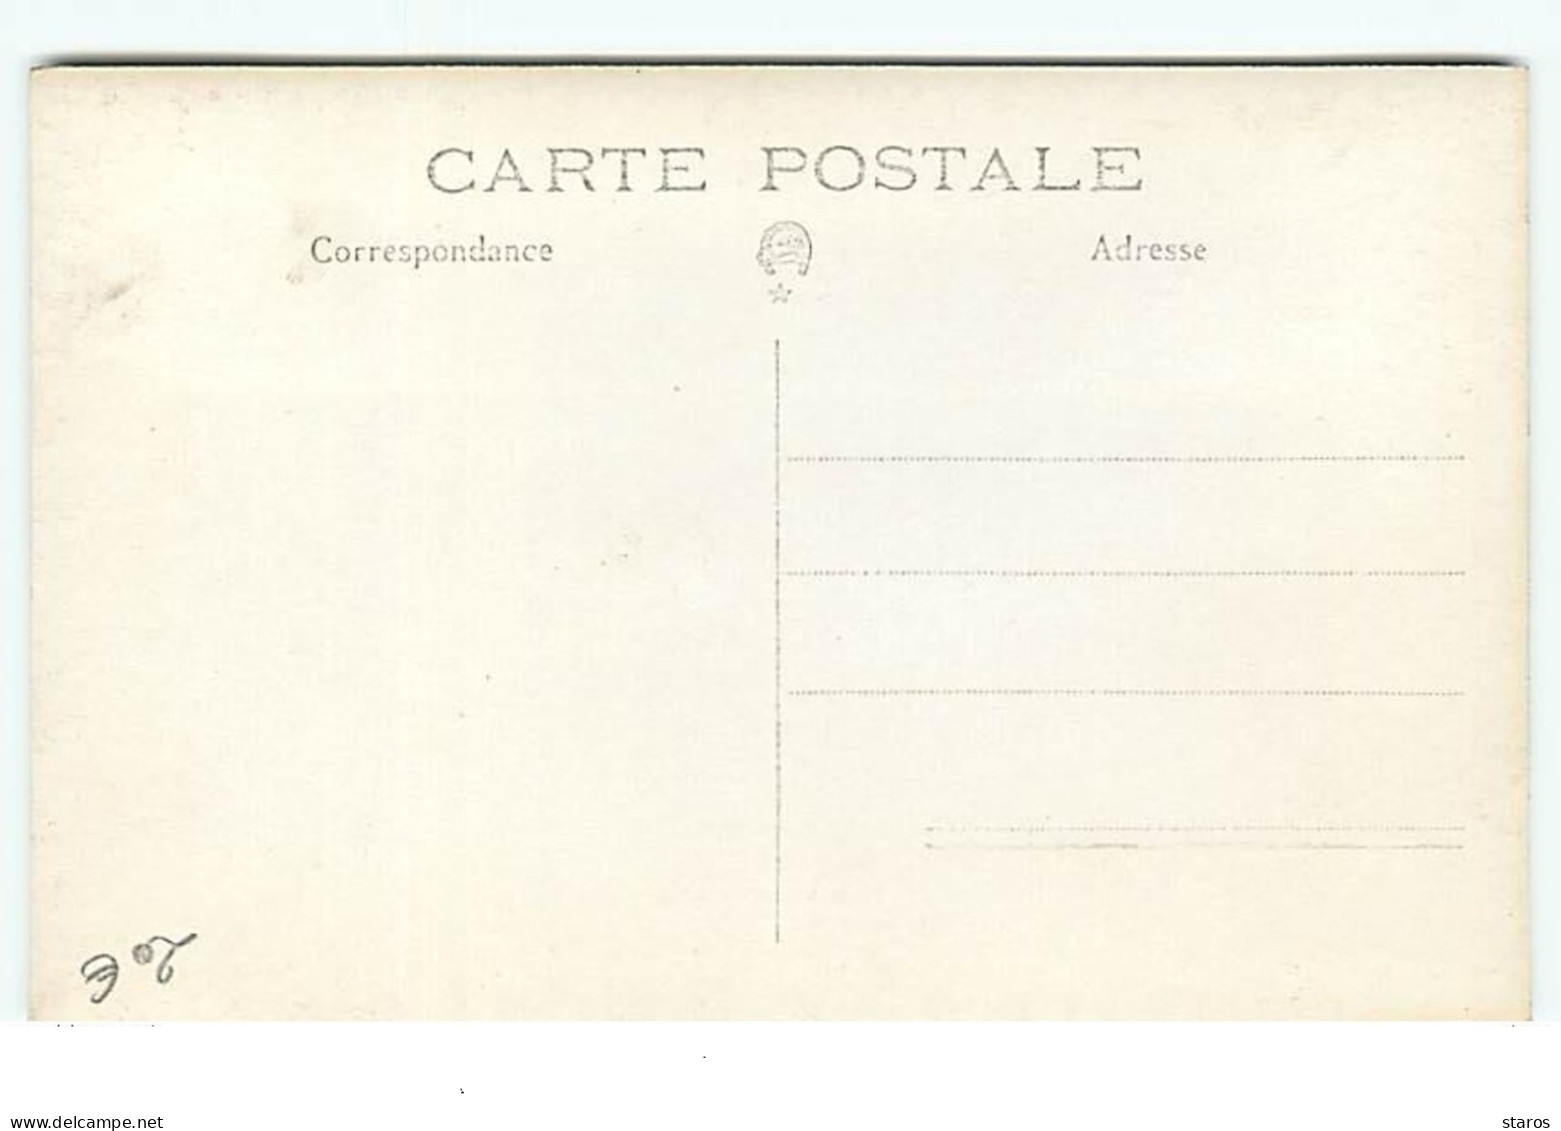 Carte-Photo - Athlétisme - Championnat De France 1928 Ou JO De 1924 à Colombes - Futur Vainqueur - Leichtathletik